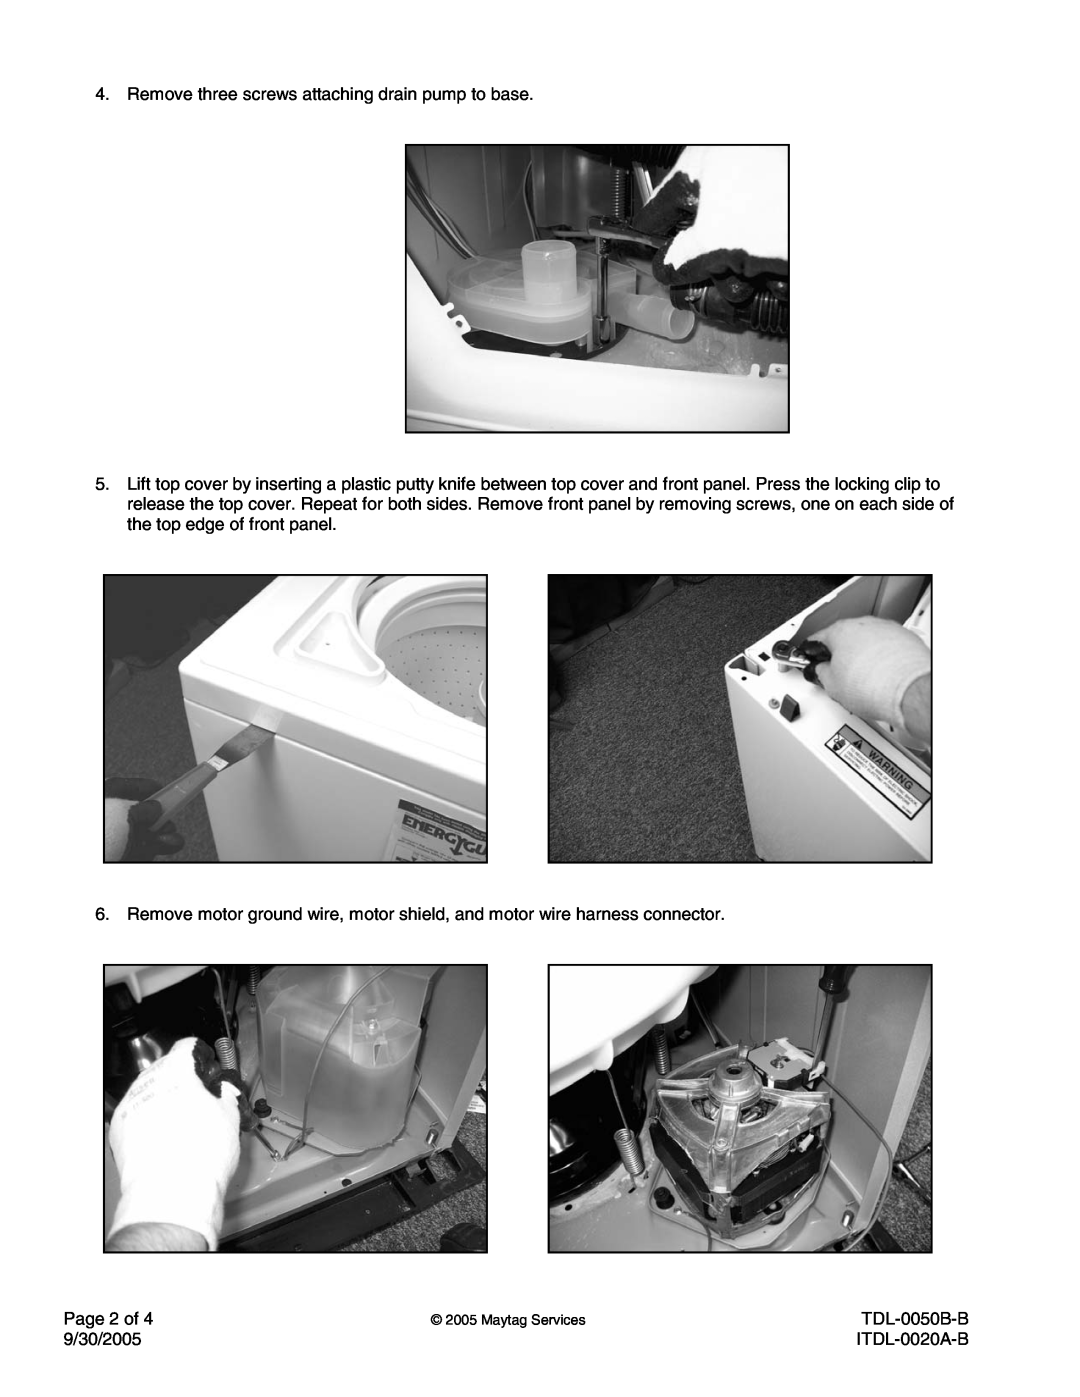 Maytag TDL-0050B-B warranty Remove three screws attaching drain pump to base 